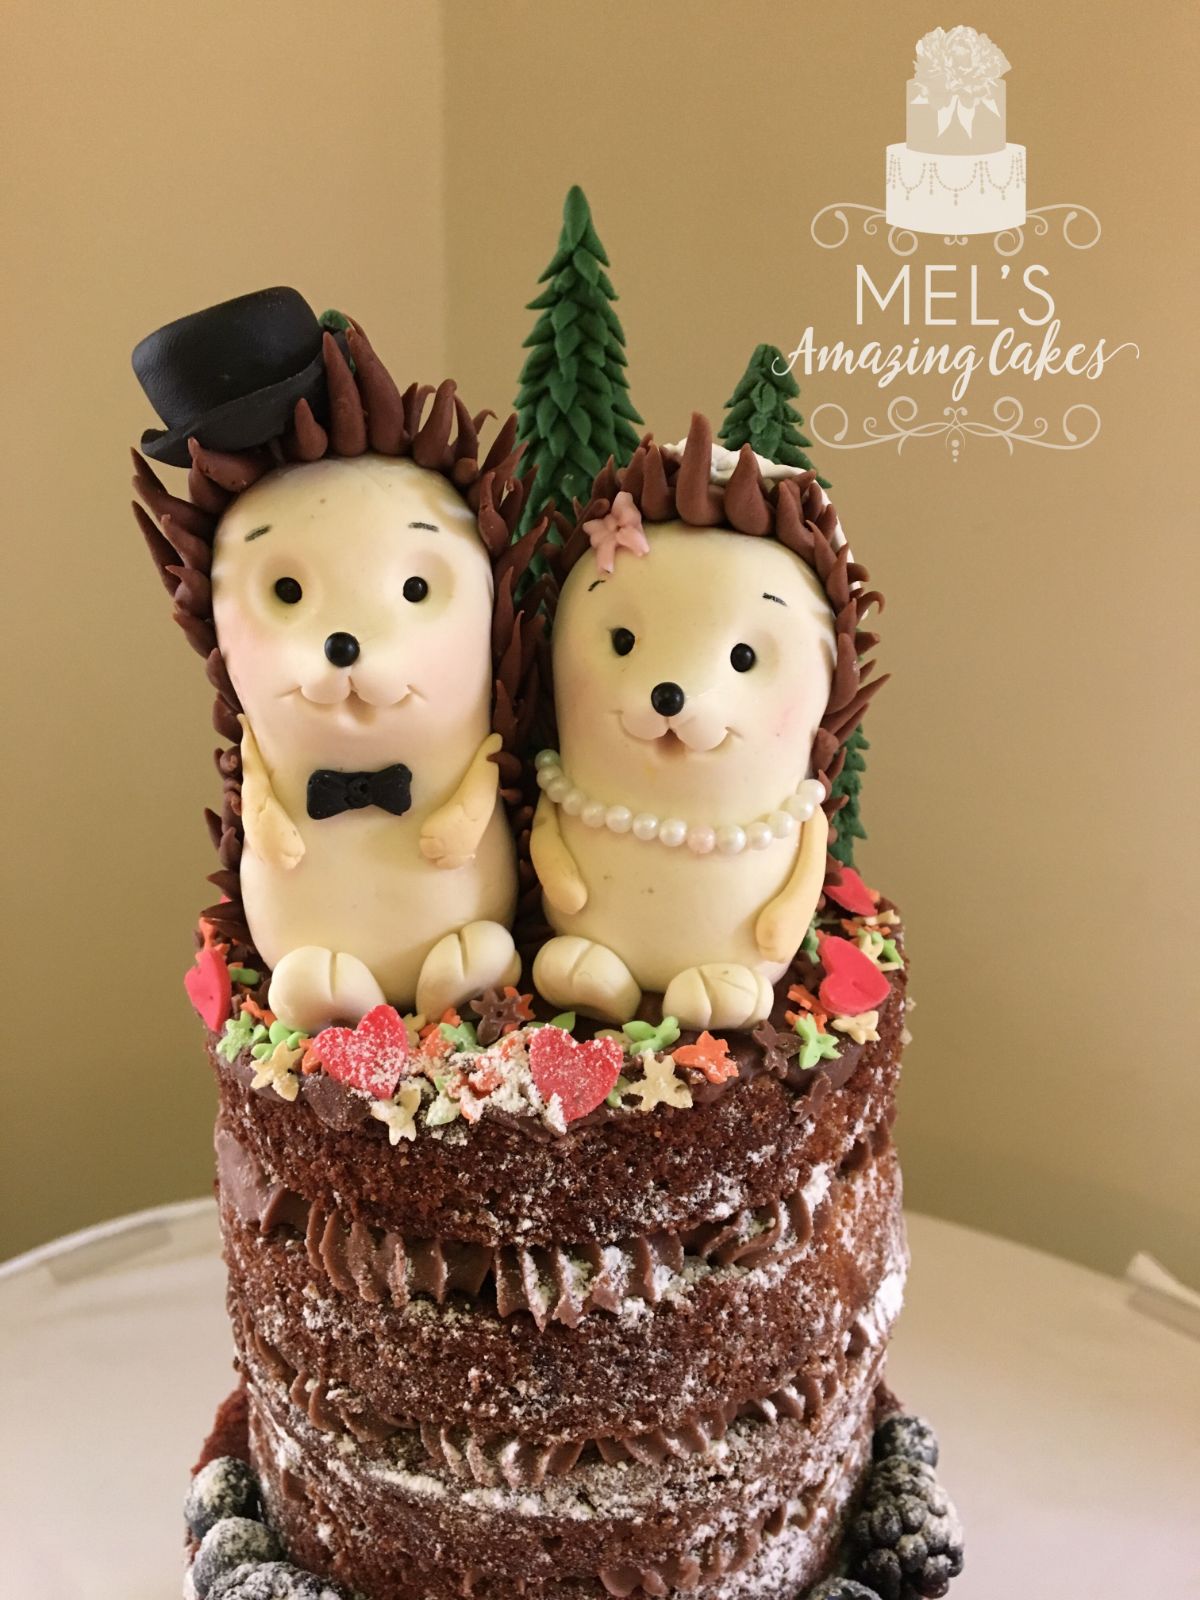 Mel's Amazing Cakes-Image-18